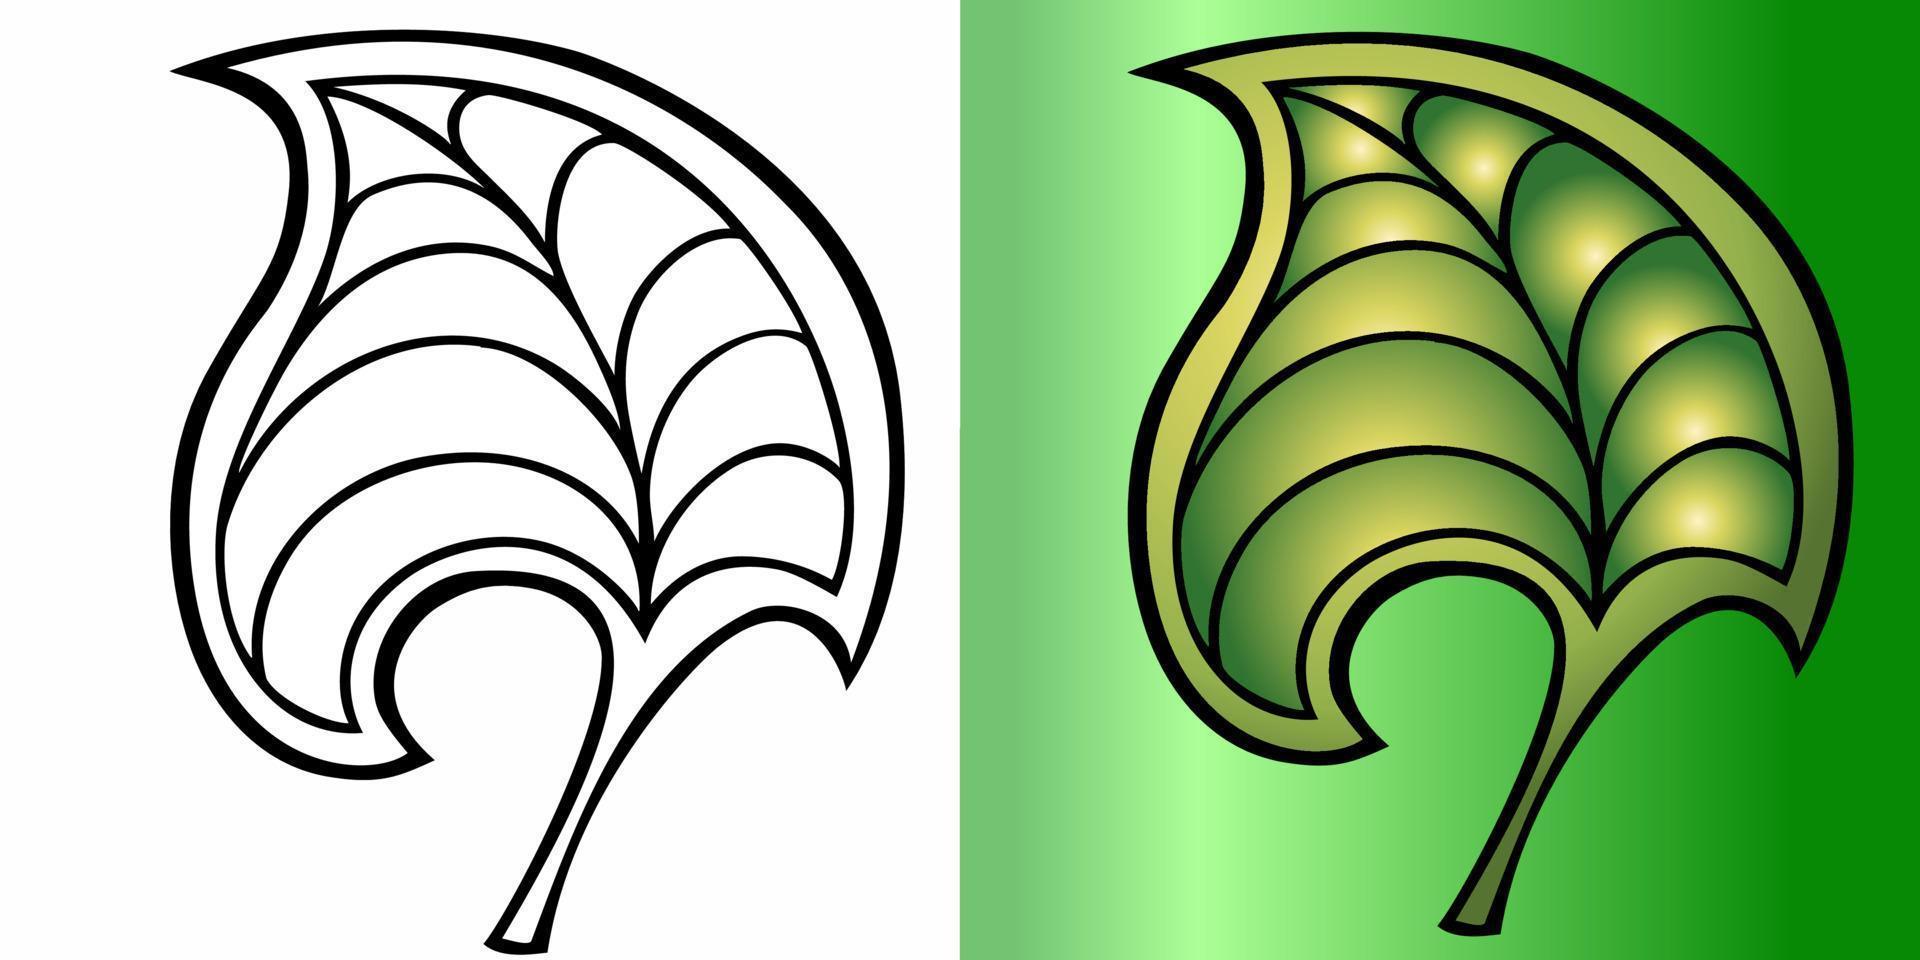 Vektor-Illustration. Set aus zwei dekorativen Blättern in Schwarzweiß und Farbe vektor